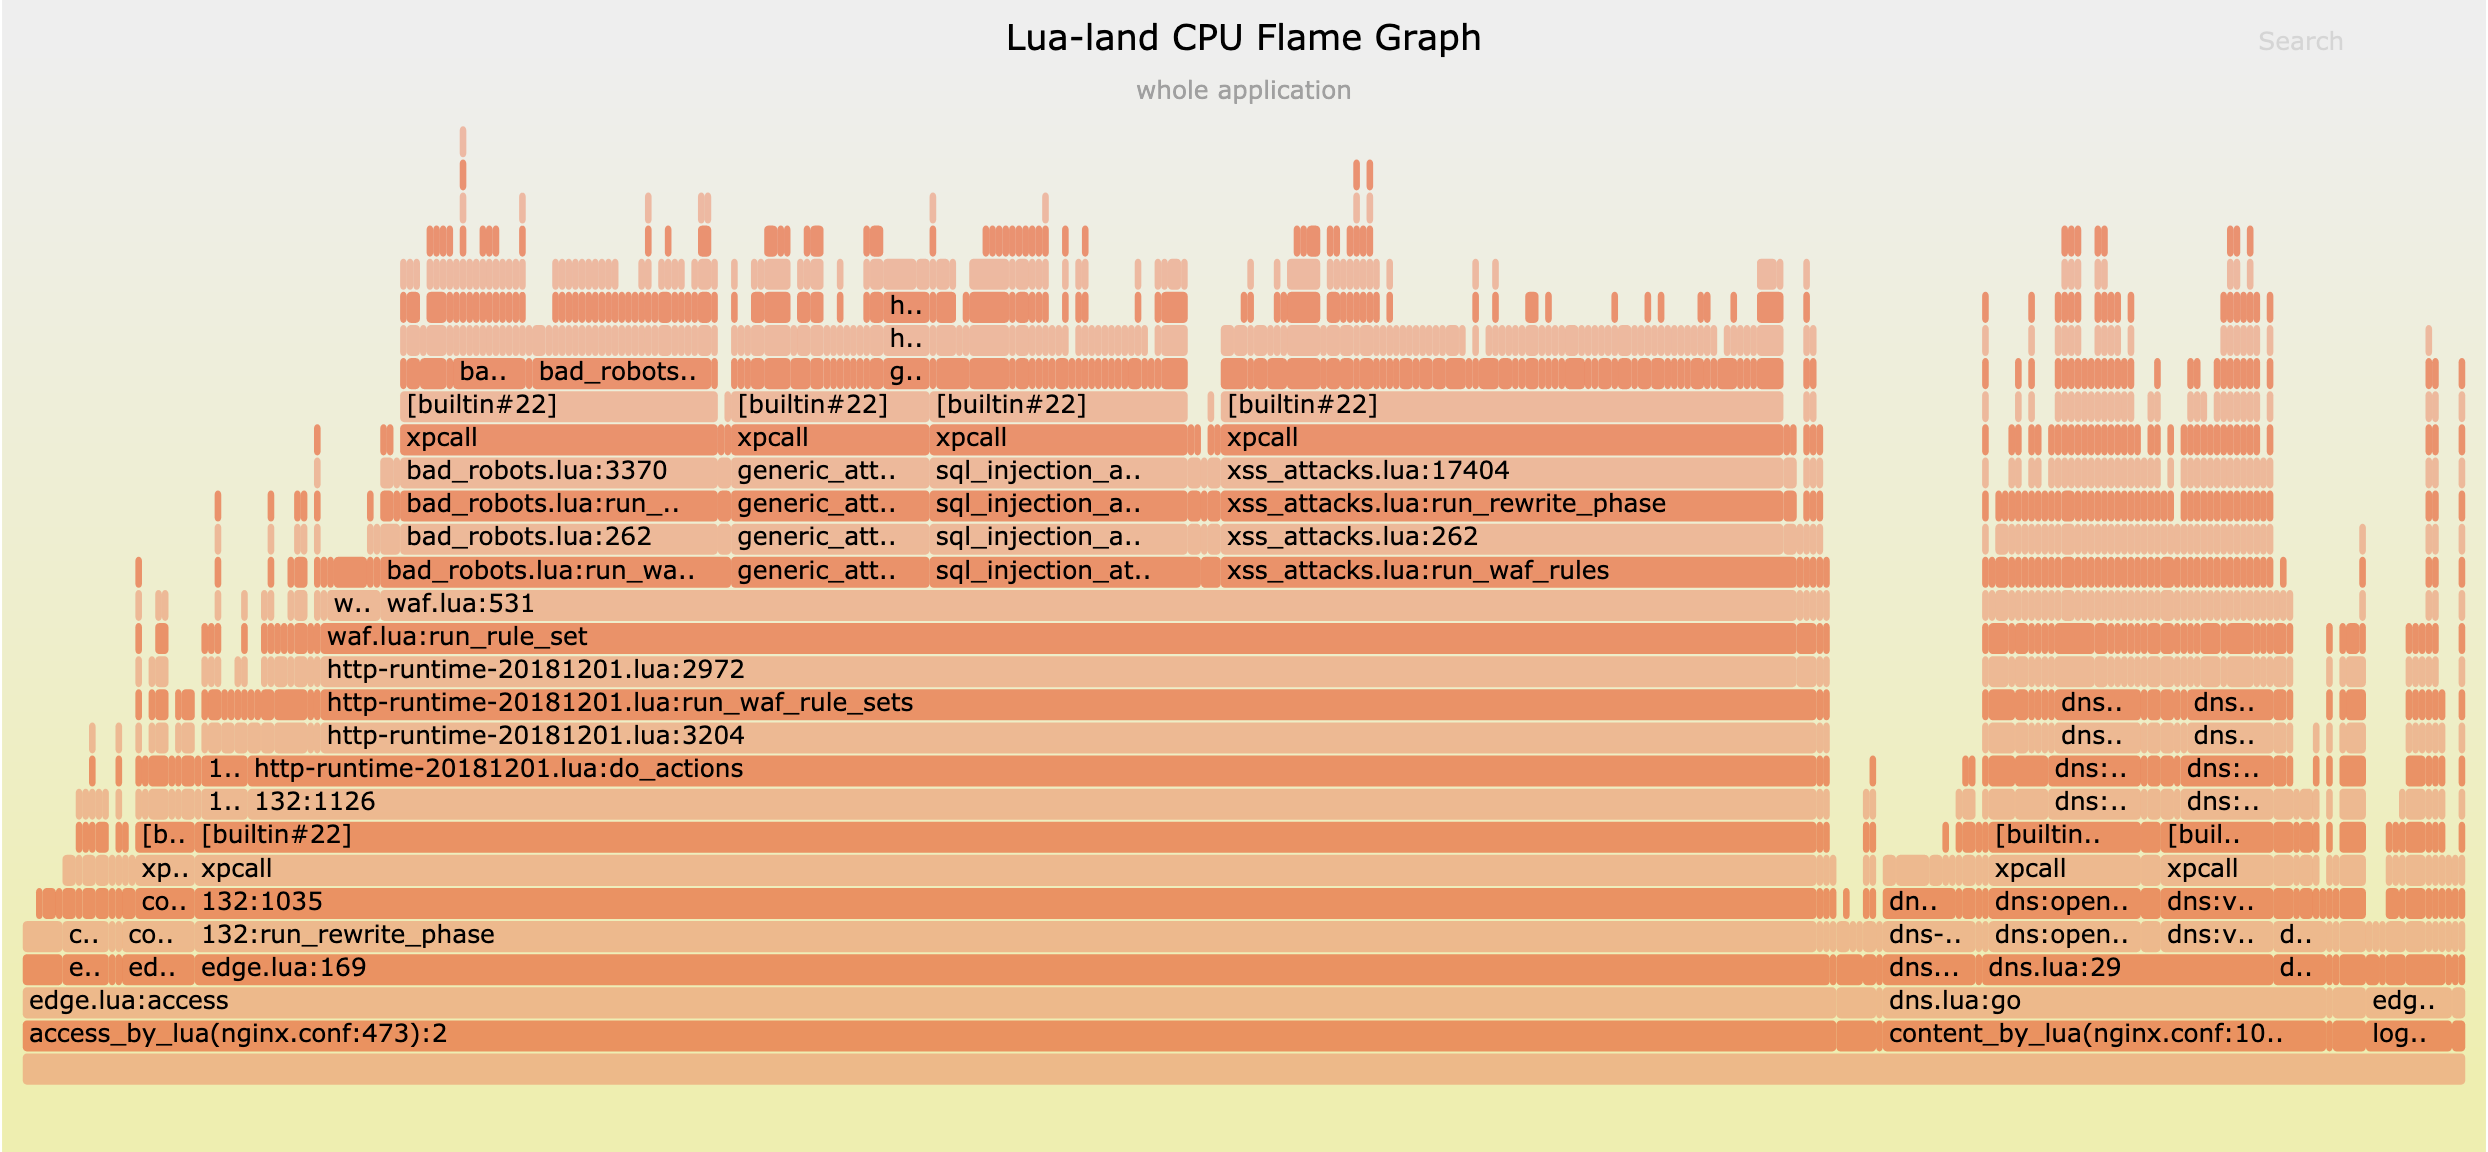 我們的迷你-CDN 伺服器的 Lua-land CPU 火焰圖